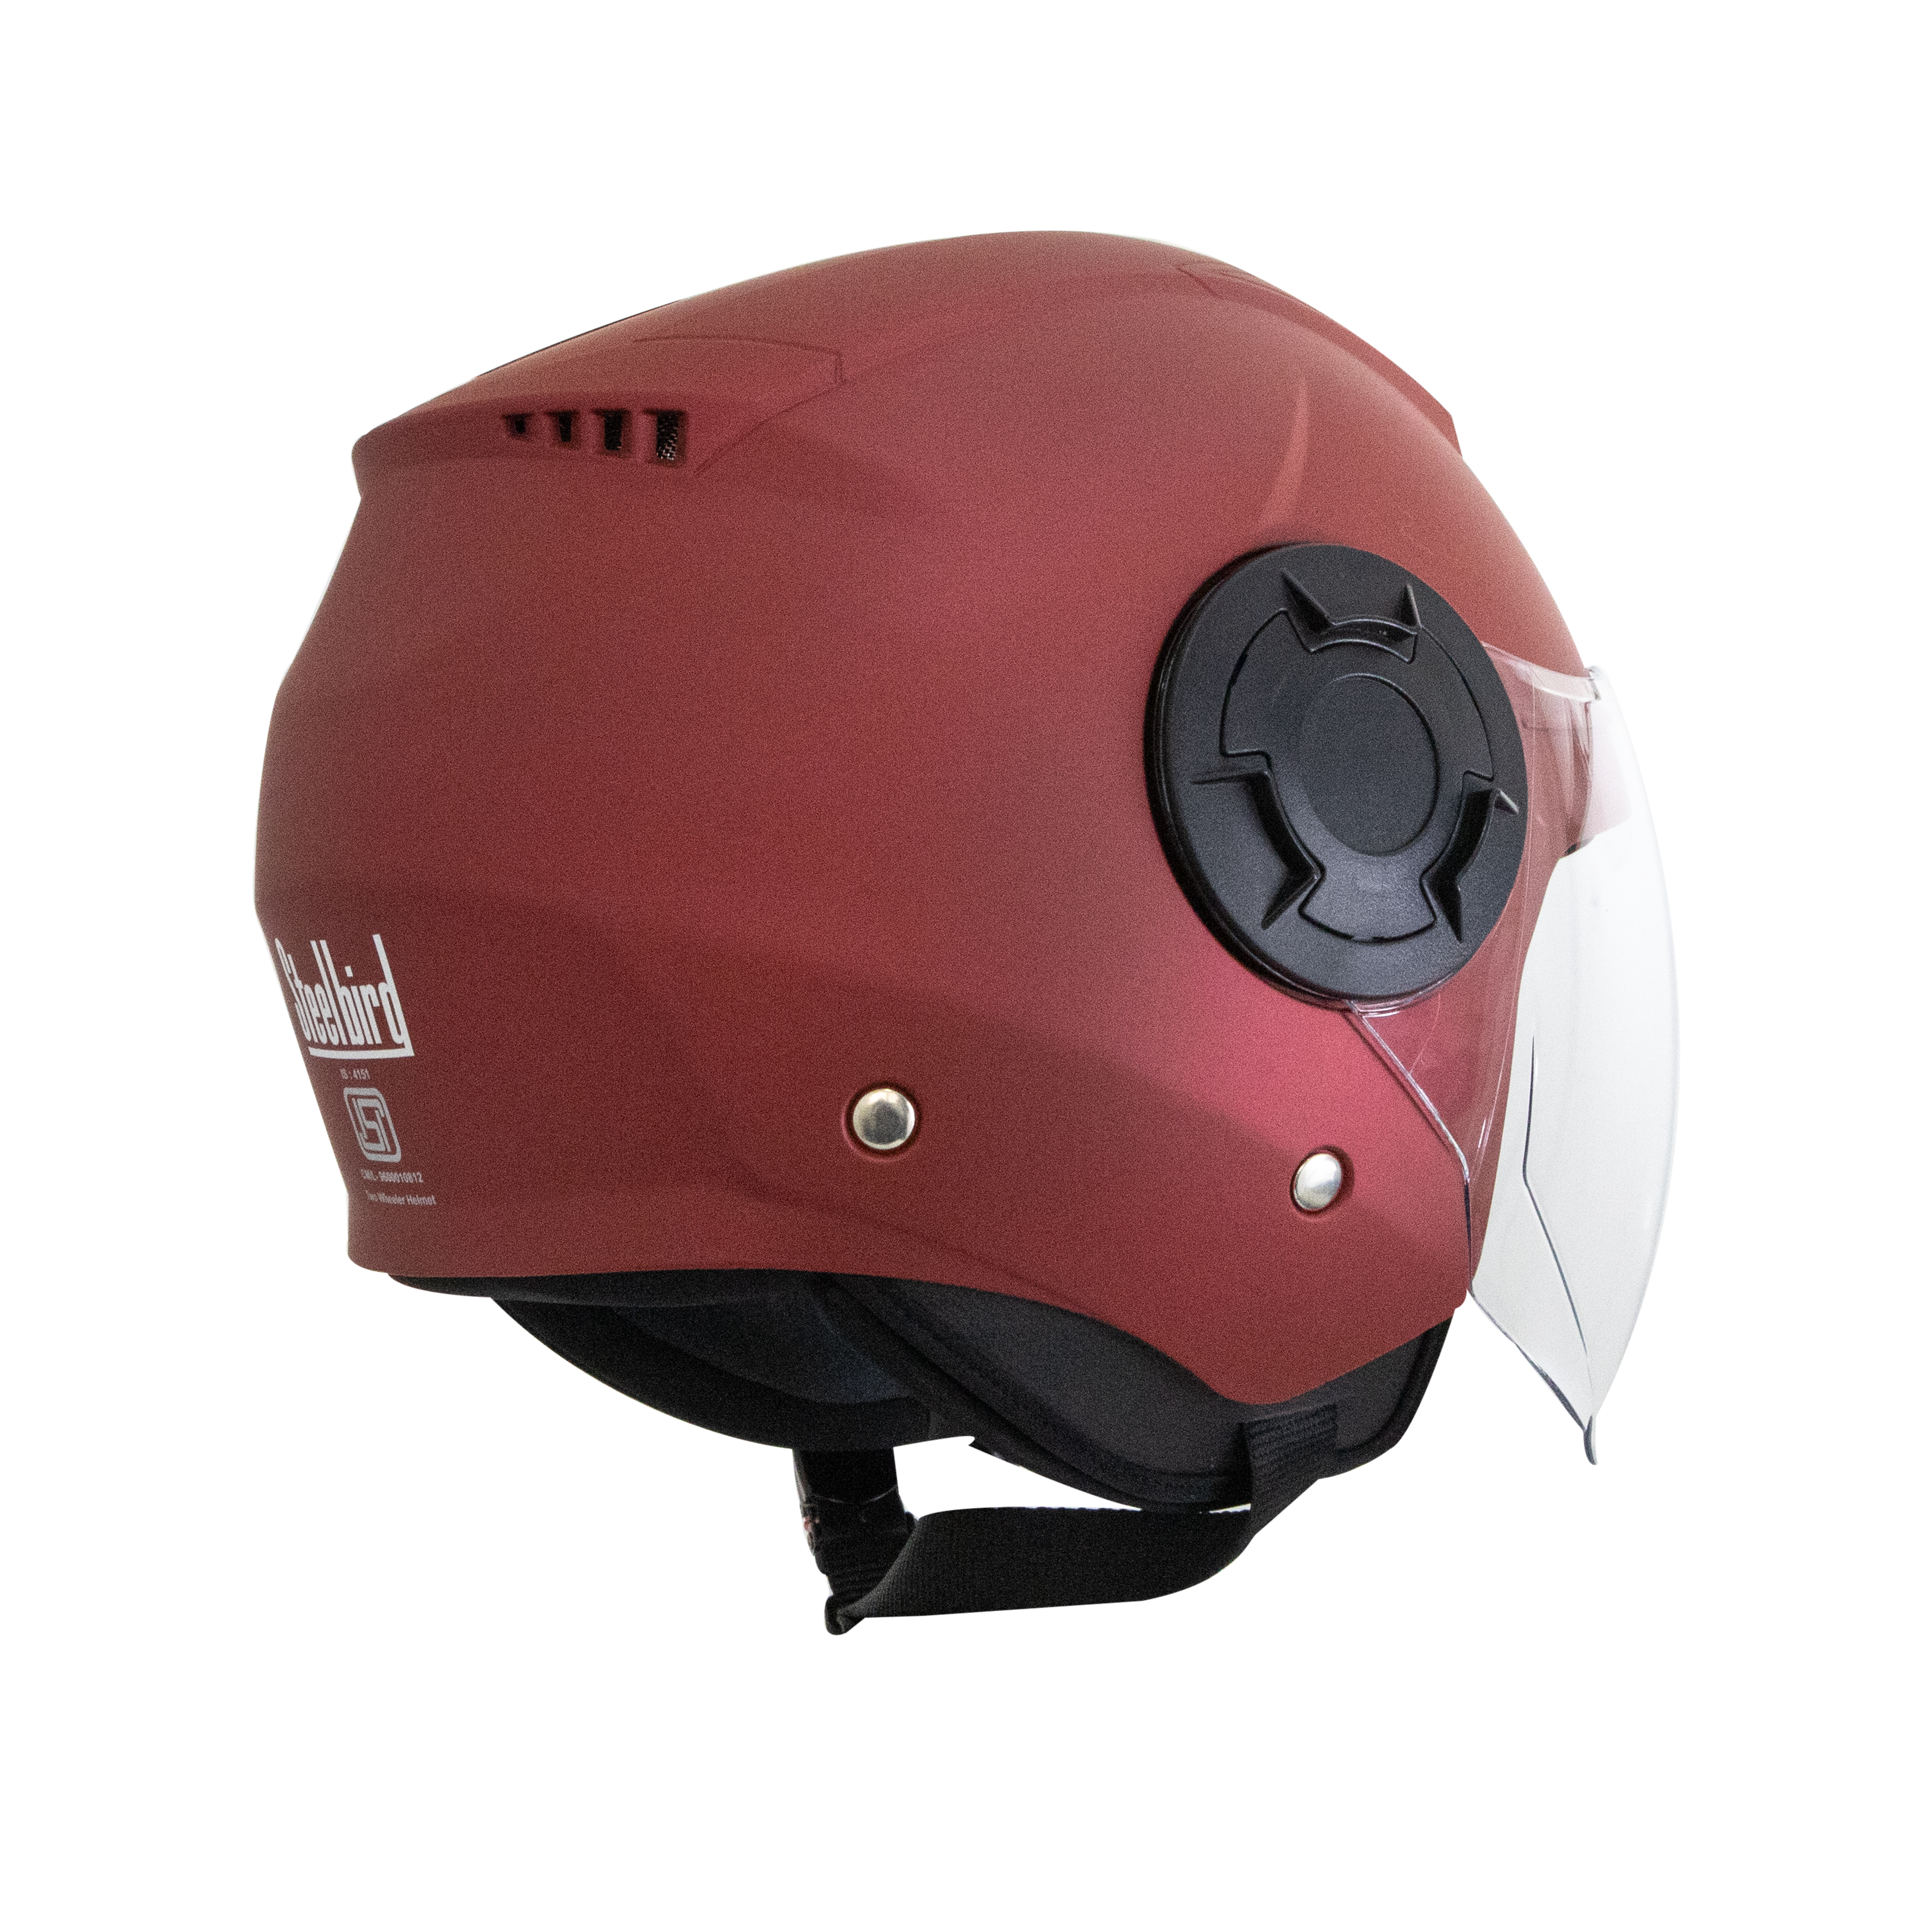 Steelbird Baron Open Face Helmet , ISI Certified Helmet (Matt Maroon With Clear Visor)